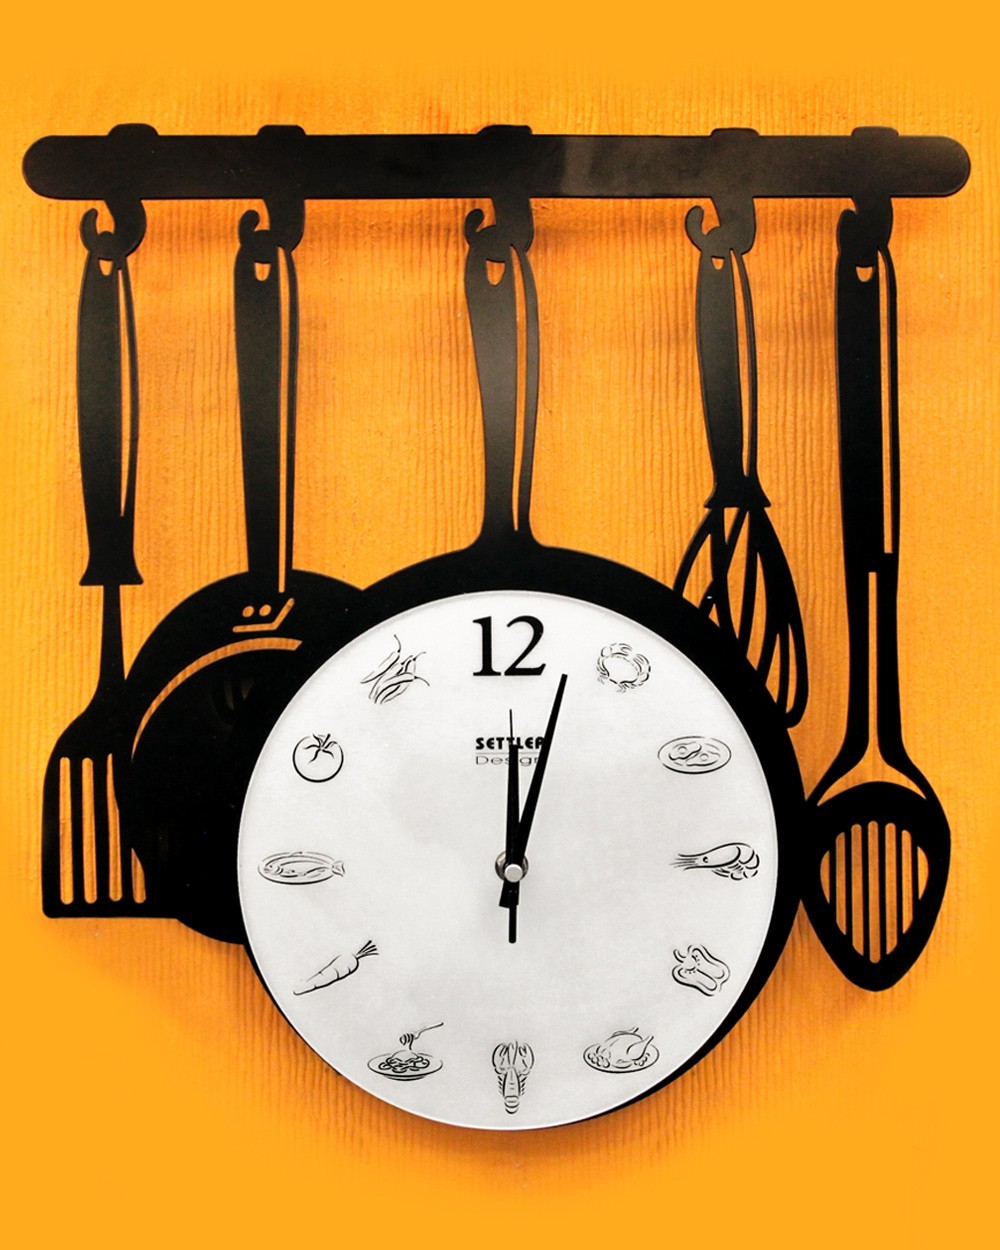 Reloj de pared con utensilios de cocina cortados con láser